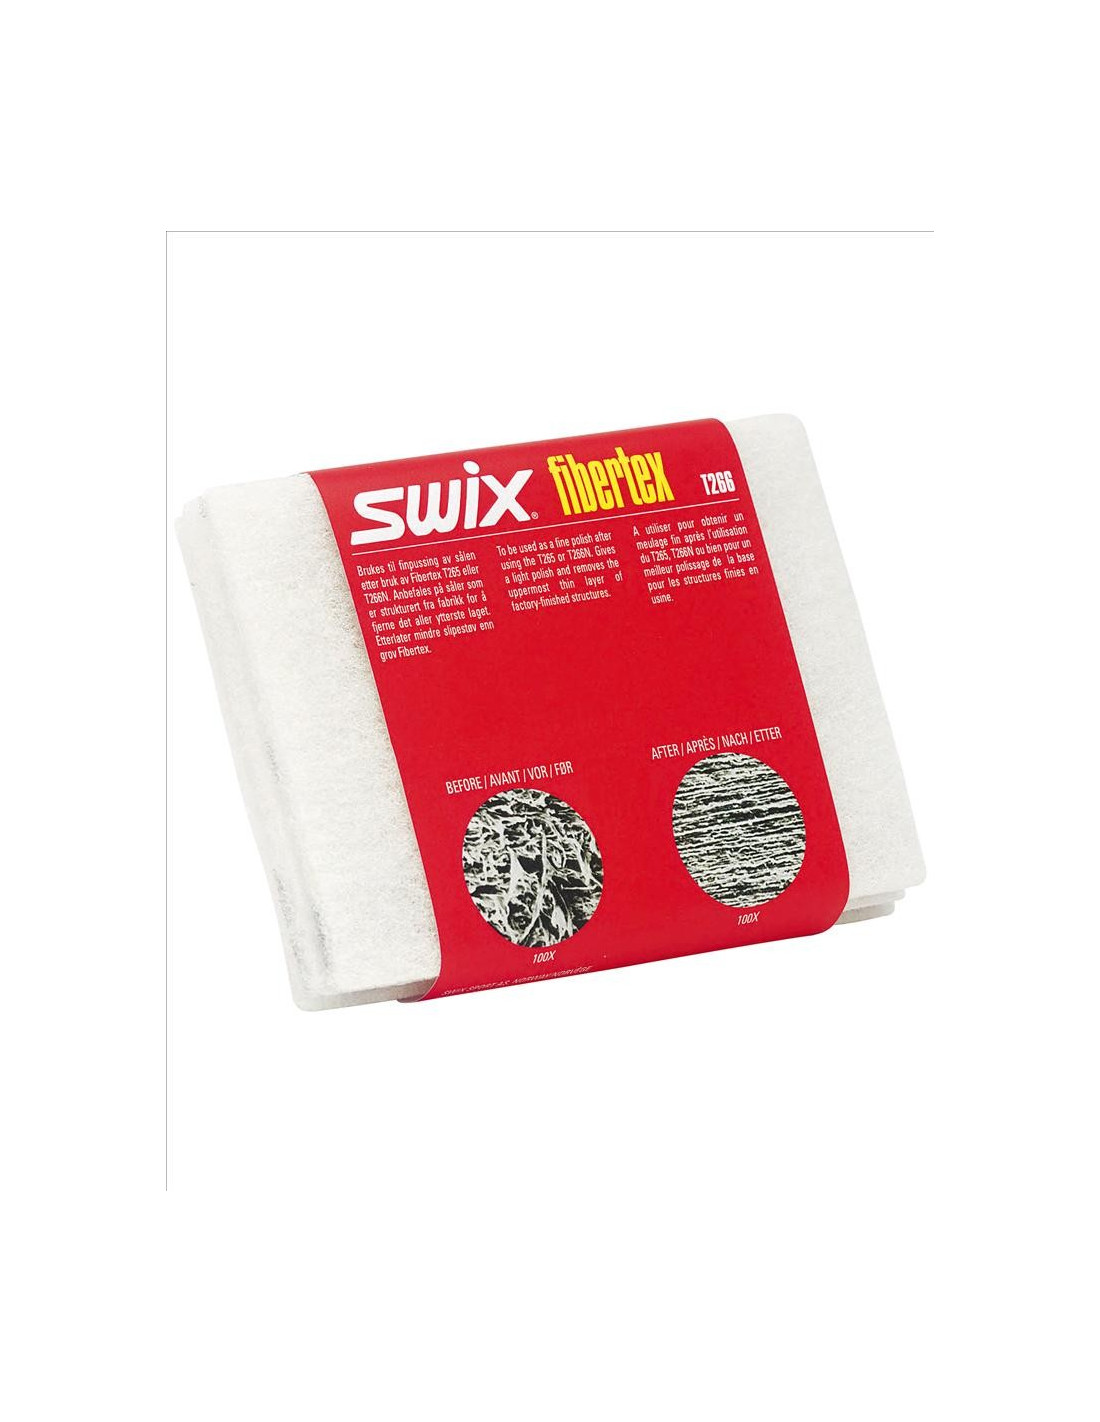 Swix Fibertex zum Reinigen weiß 110x150 mm 3 Stück Tools - Schleifpapier, von Swix